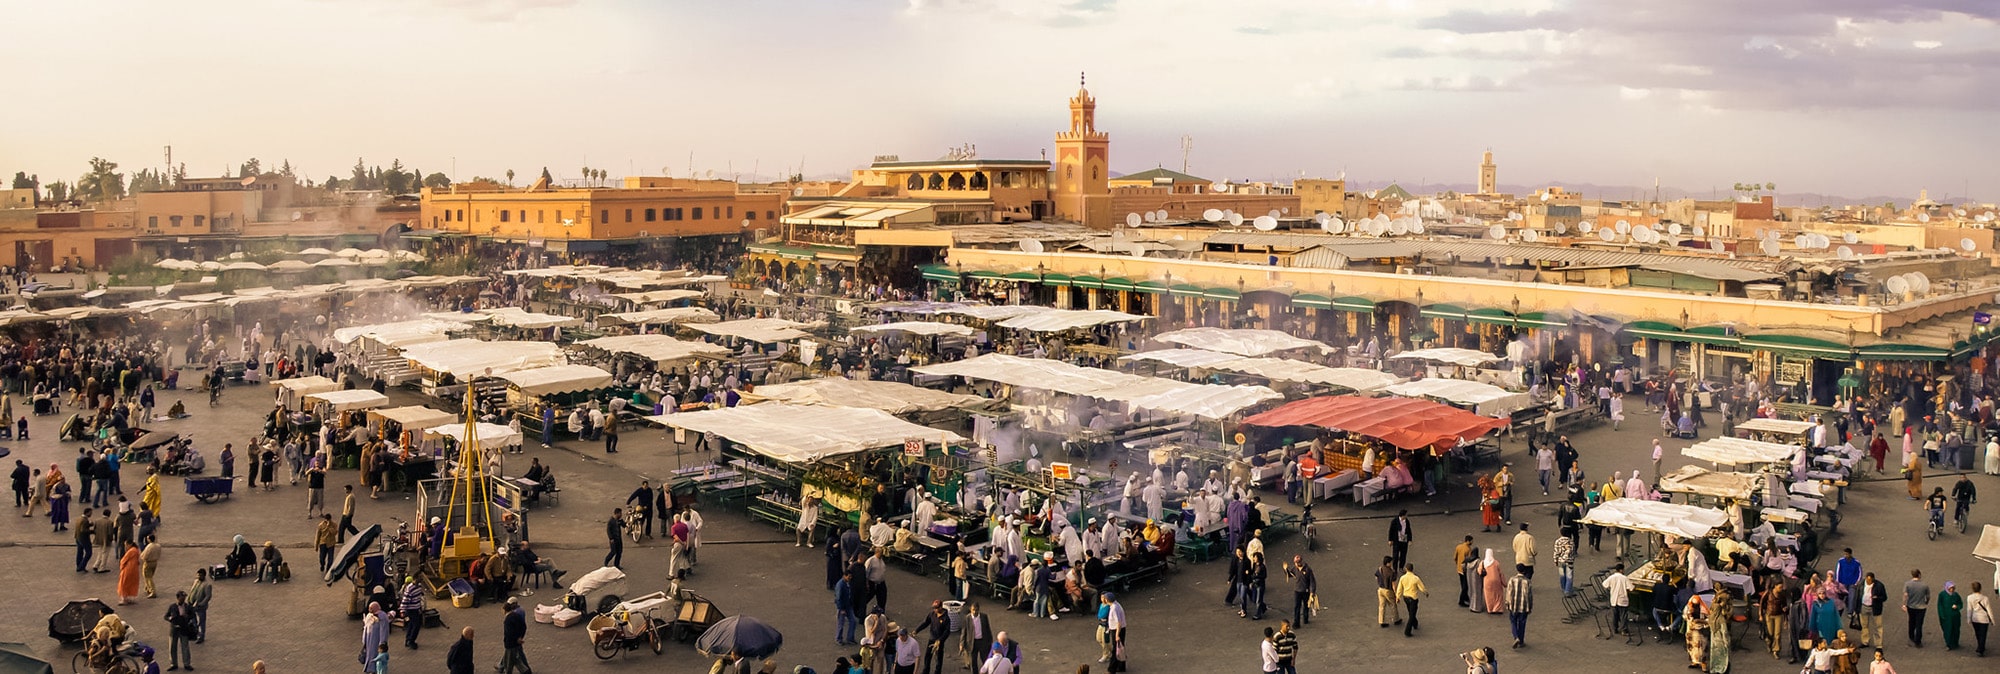 Putovanje Maroko 2021